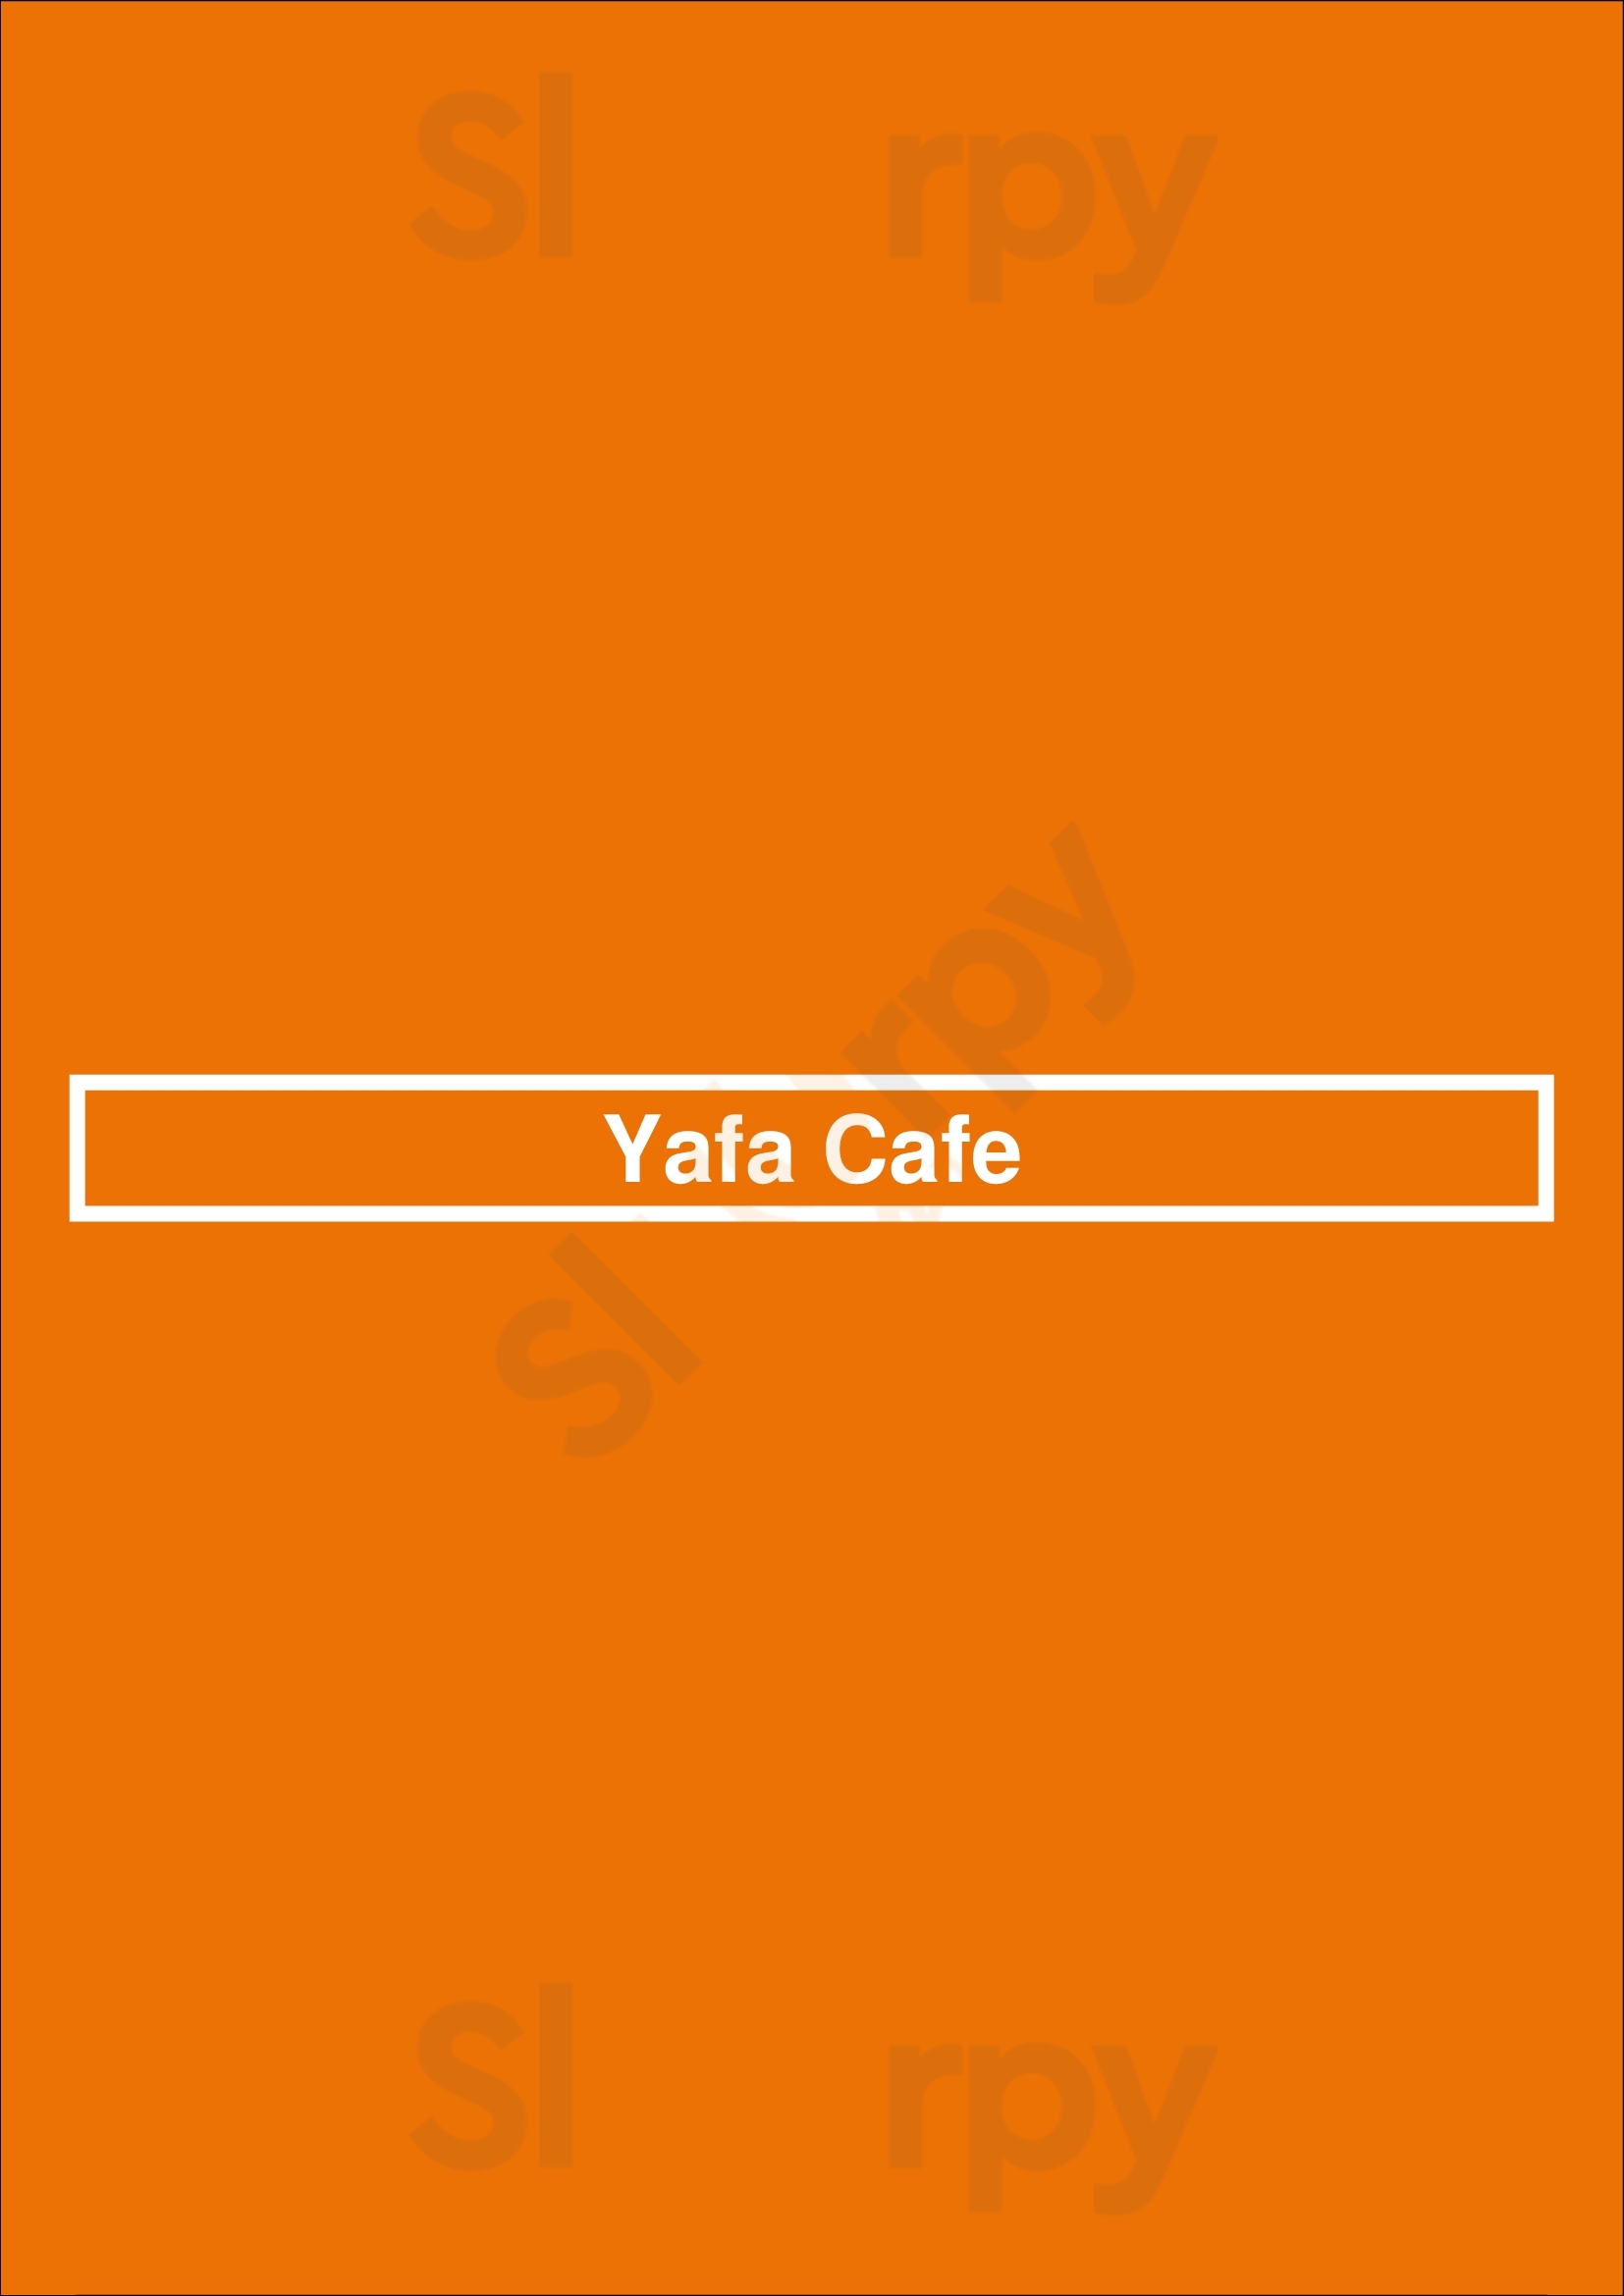 Yafa Cafe Winnipeg Menu - 1